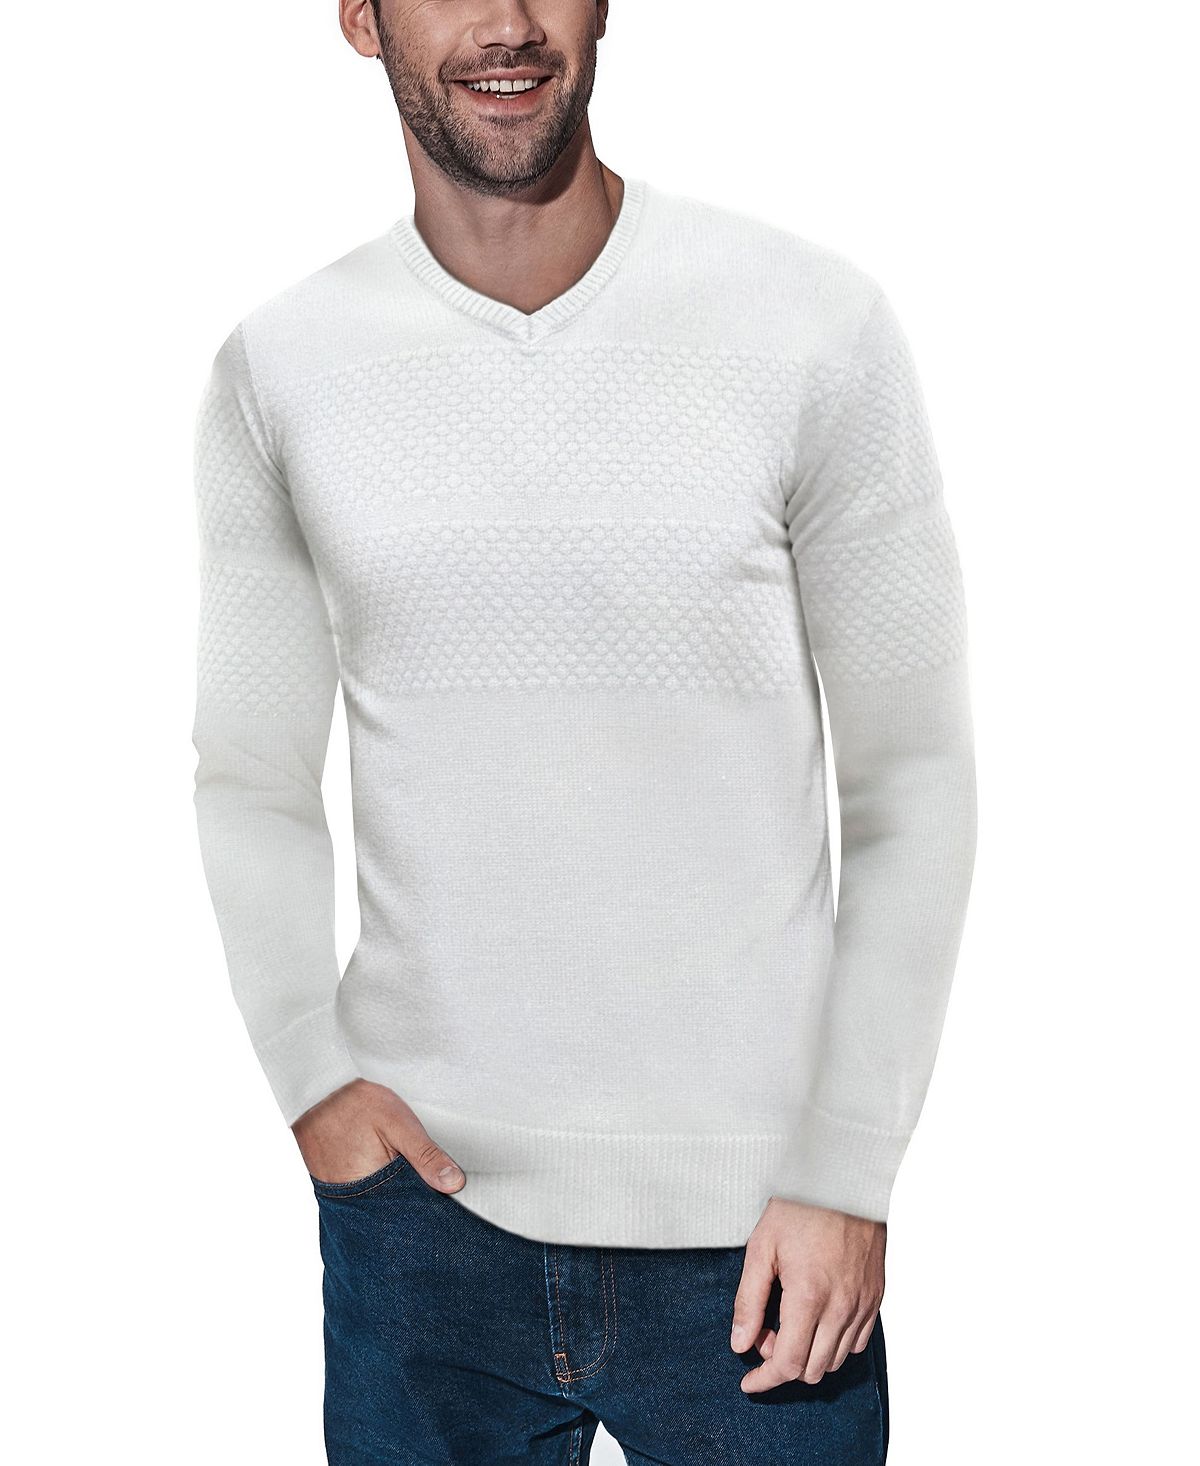 Мужской свитер сотовой вязки с v-образным вырезом X-Ray, мульти женский пуловер с вышивкой и v образным вырезом